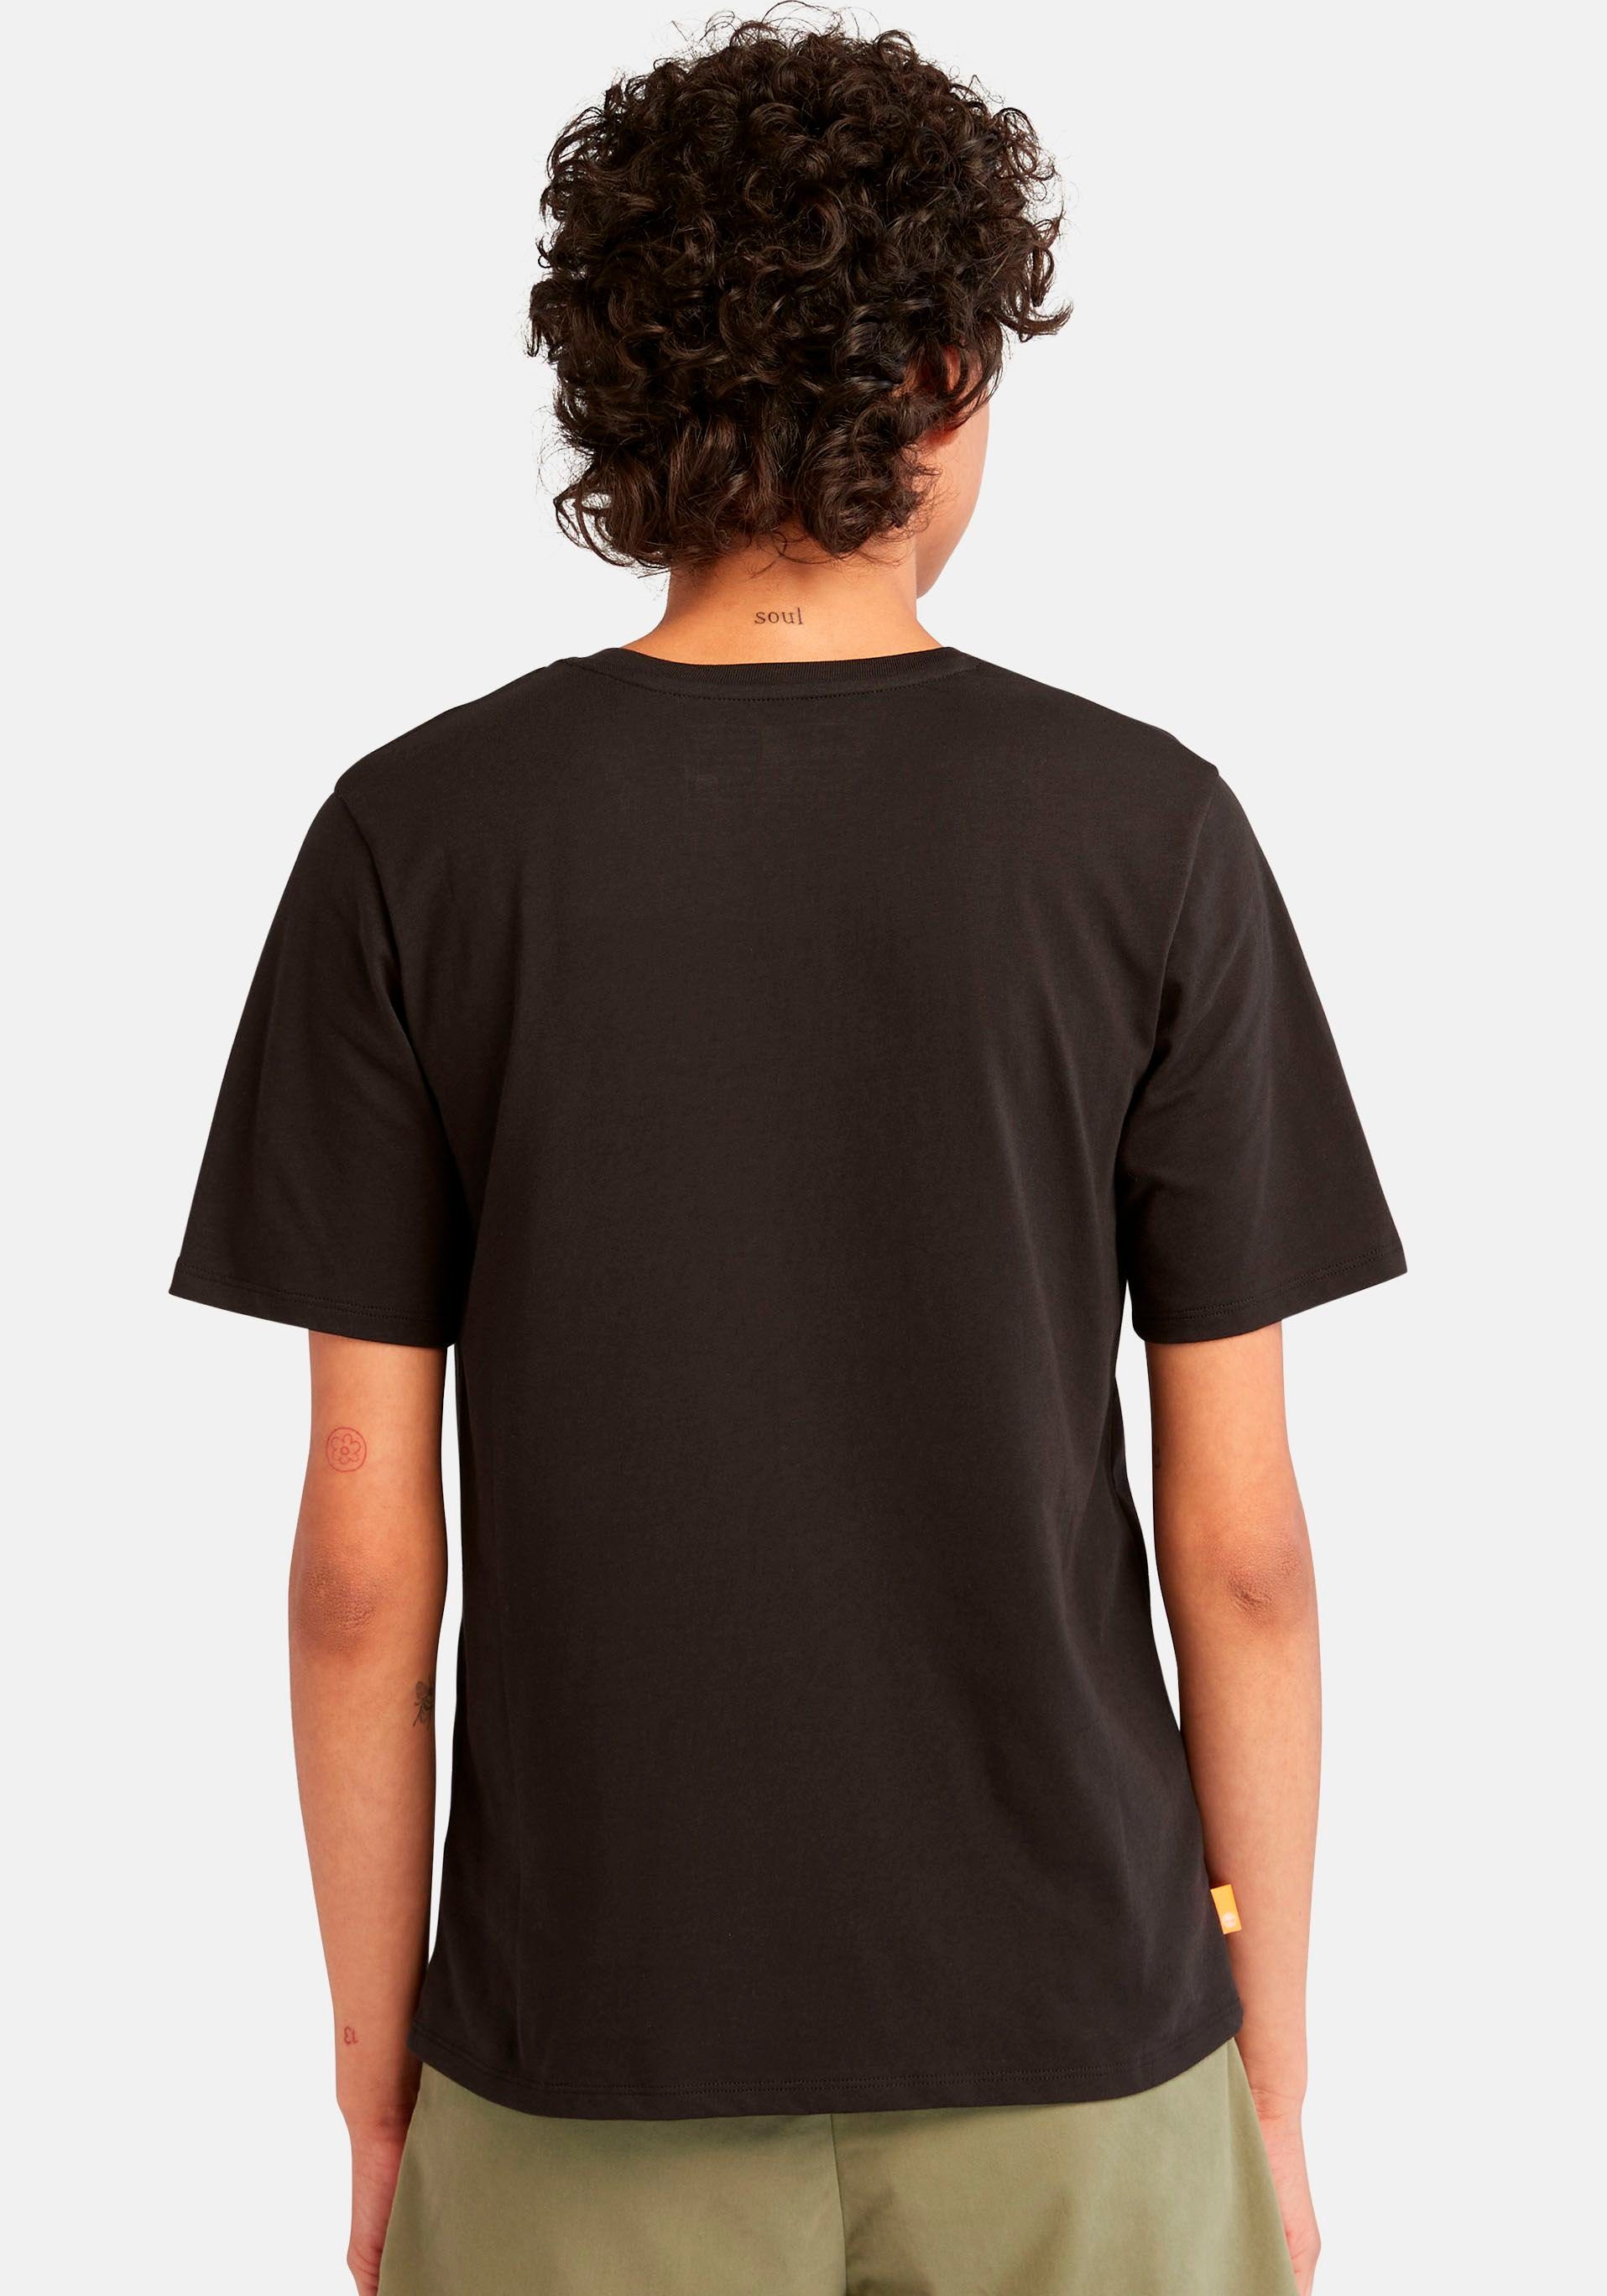 TEE LOGO Logodruck Timberland mit REGULAR STACK T-Shirt schwarz